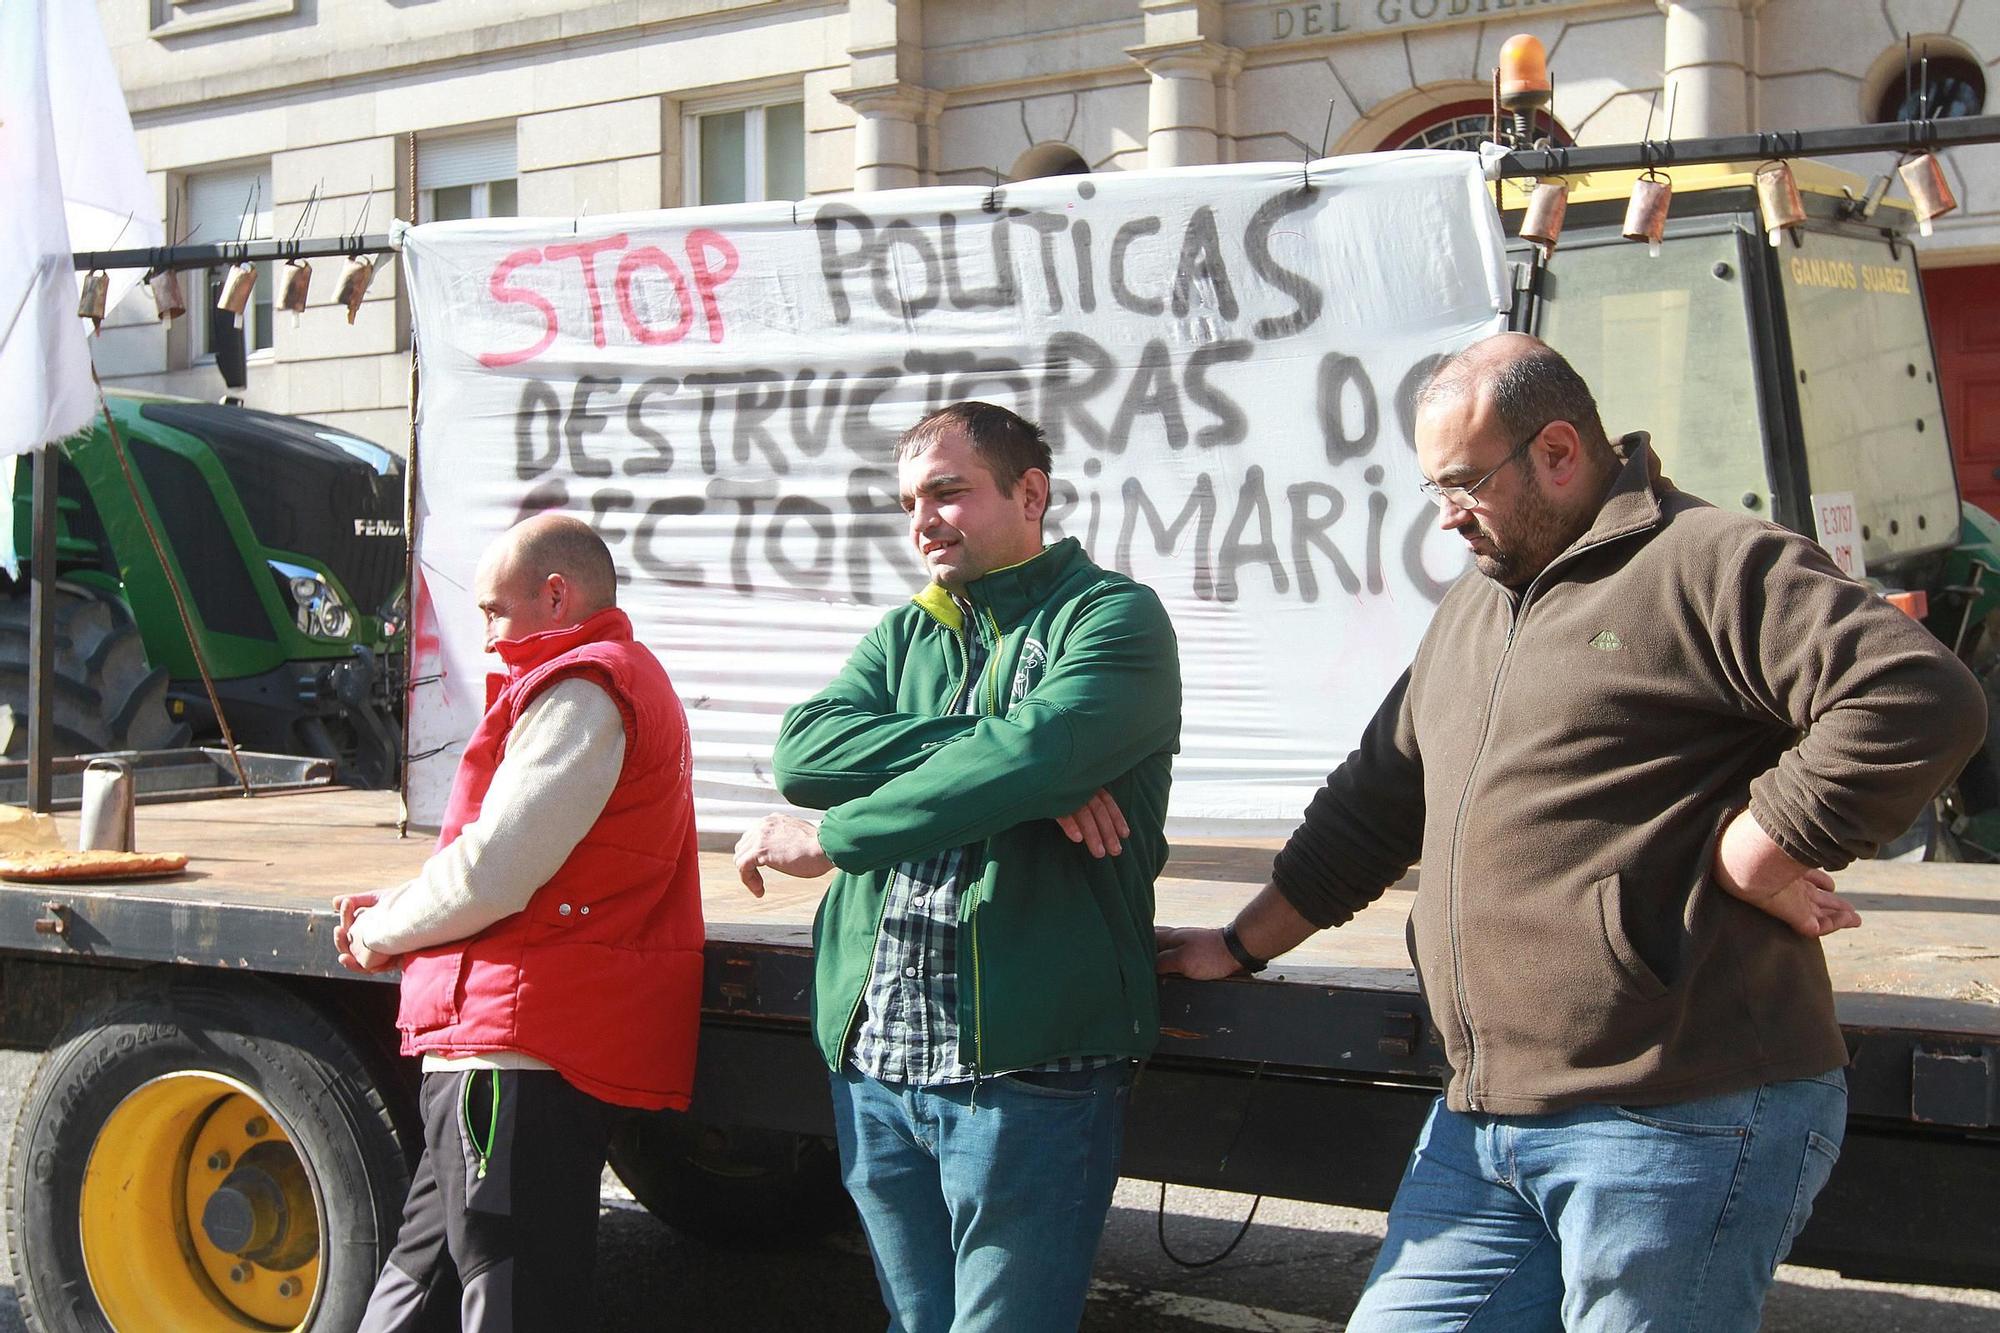 Tractorada en Ourense: doscientos vehículos agrícolas colapsan la ciudad en protesta contra las medidas de la UE